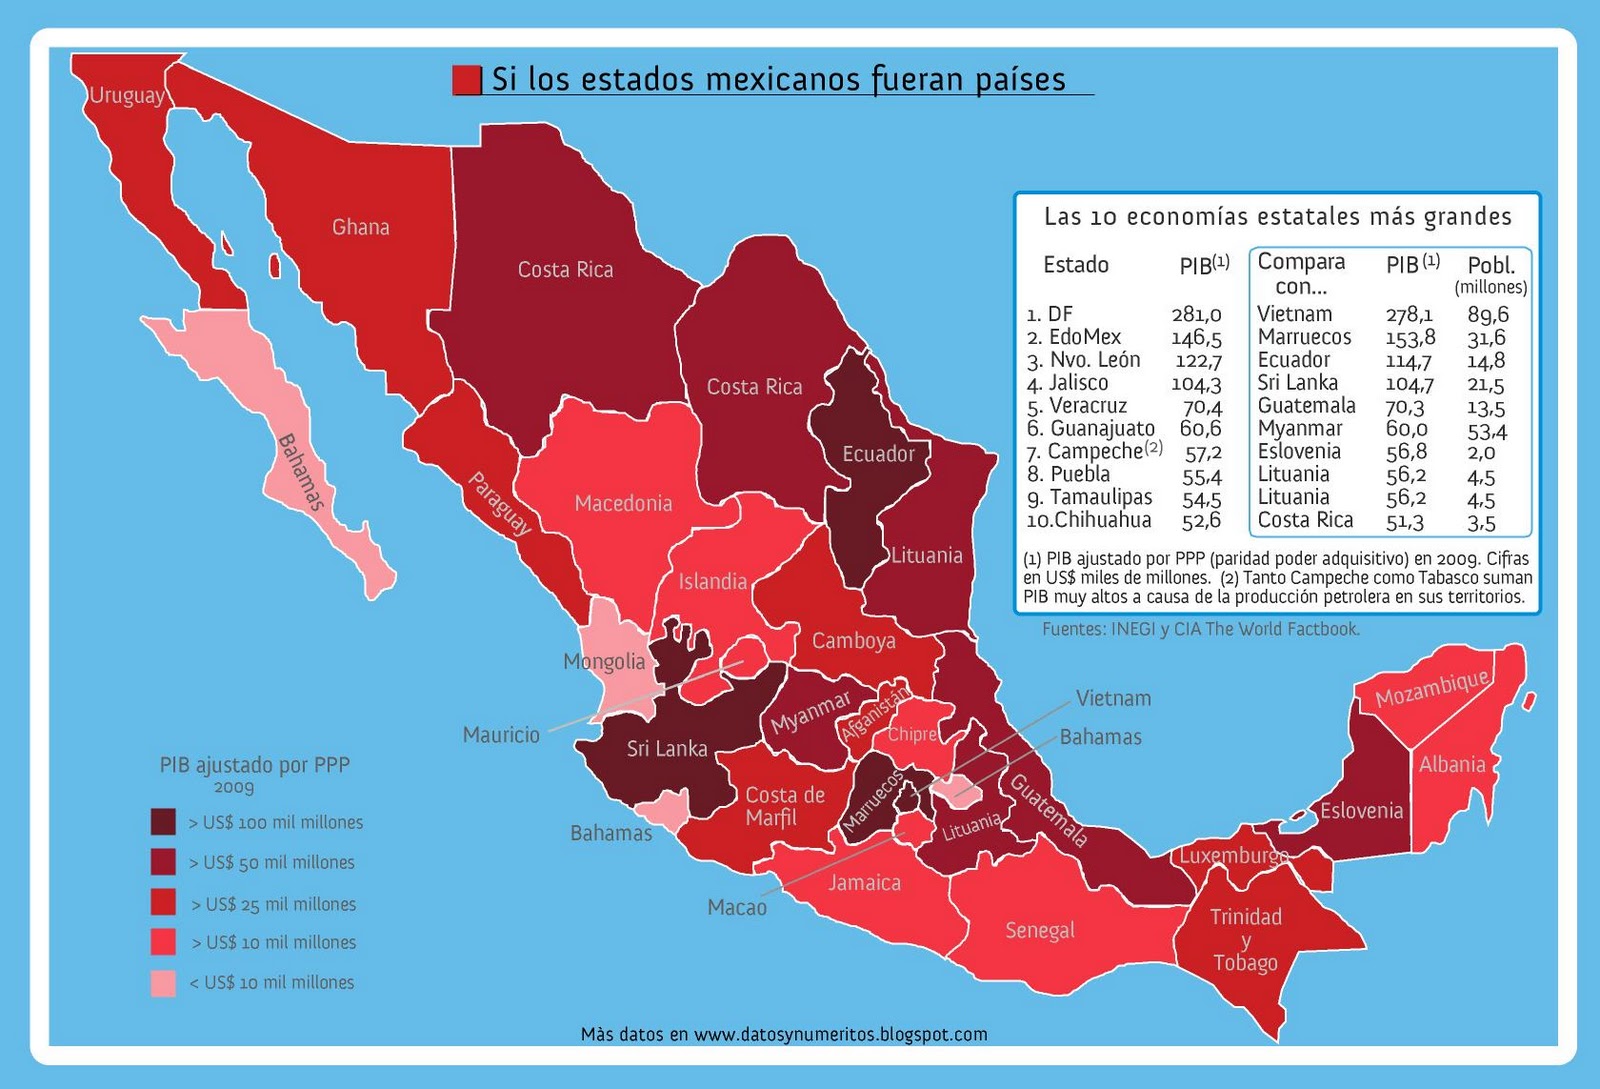 Datos y Numeritos: SI LOS ESTADOS MEXICANOS FUERAN PAÍSES